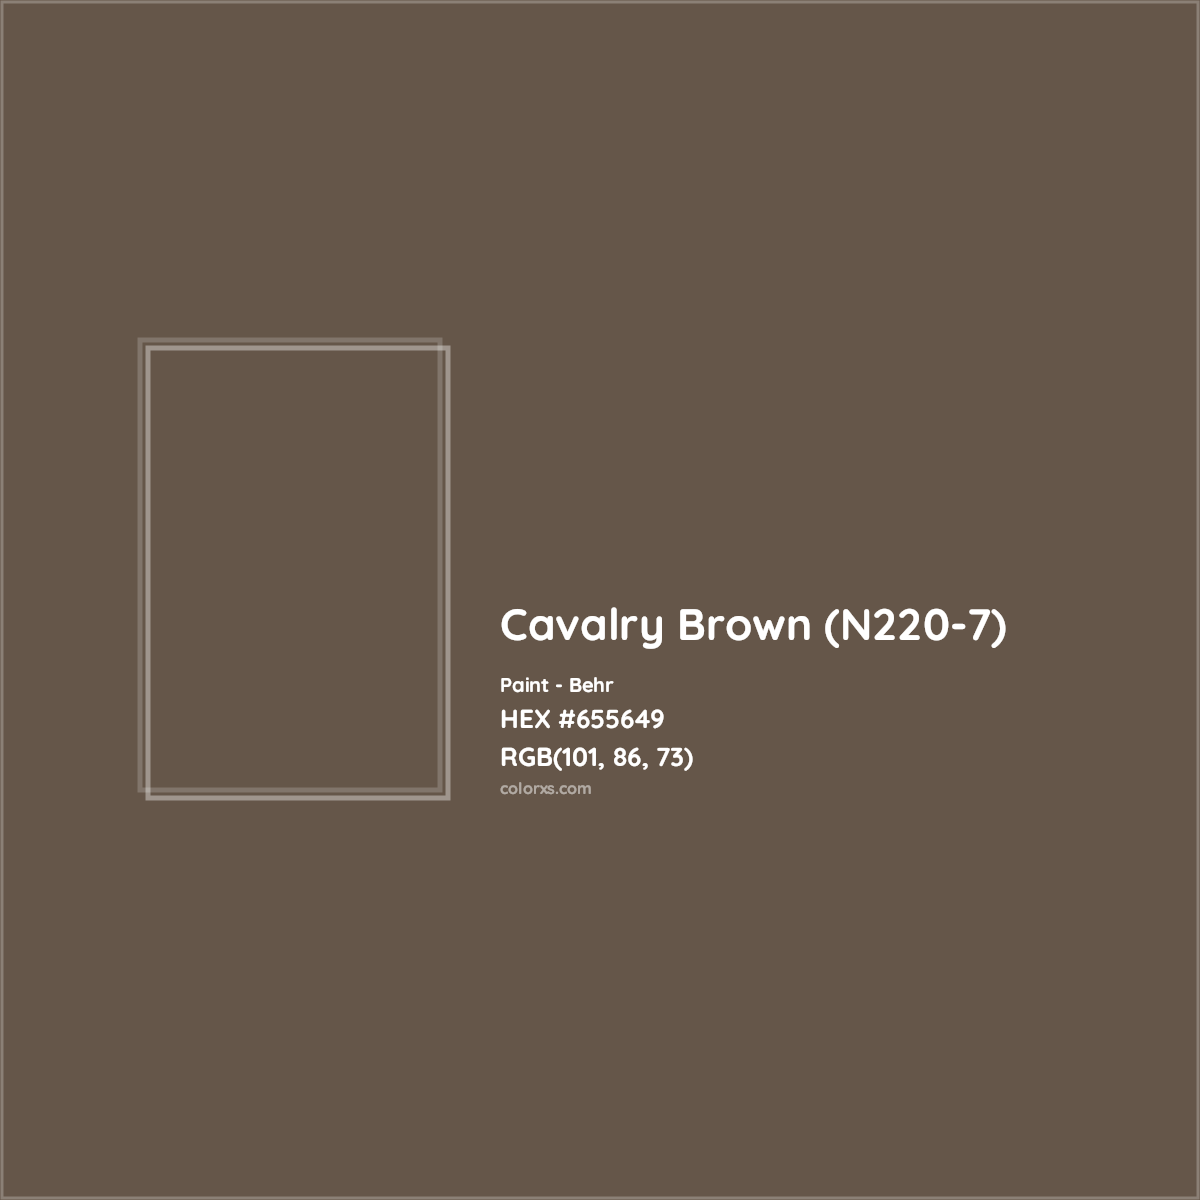 HEX #655649 Cavalry Brown (N220-7) Paint Behr - Color Code